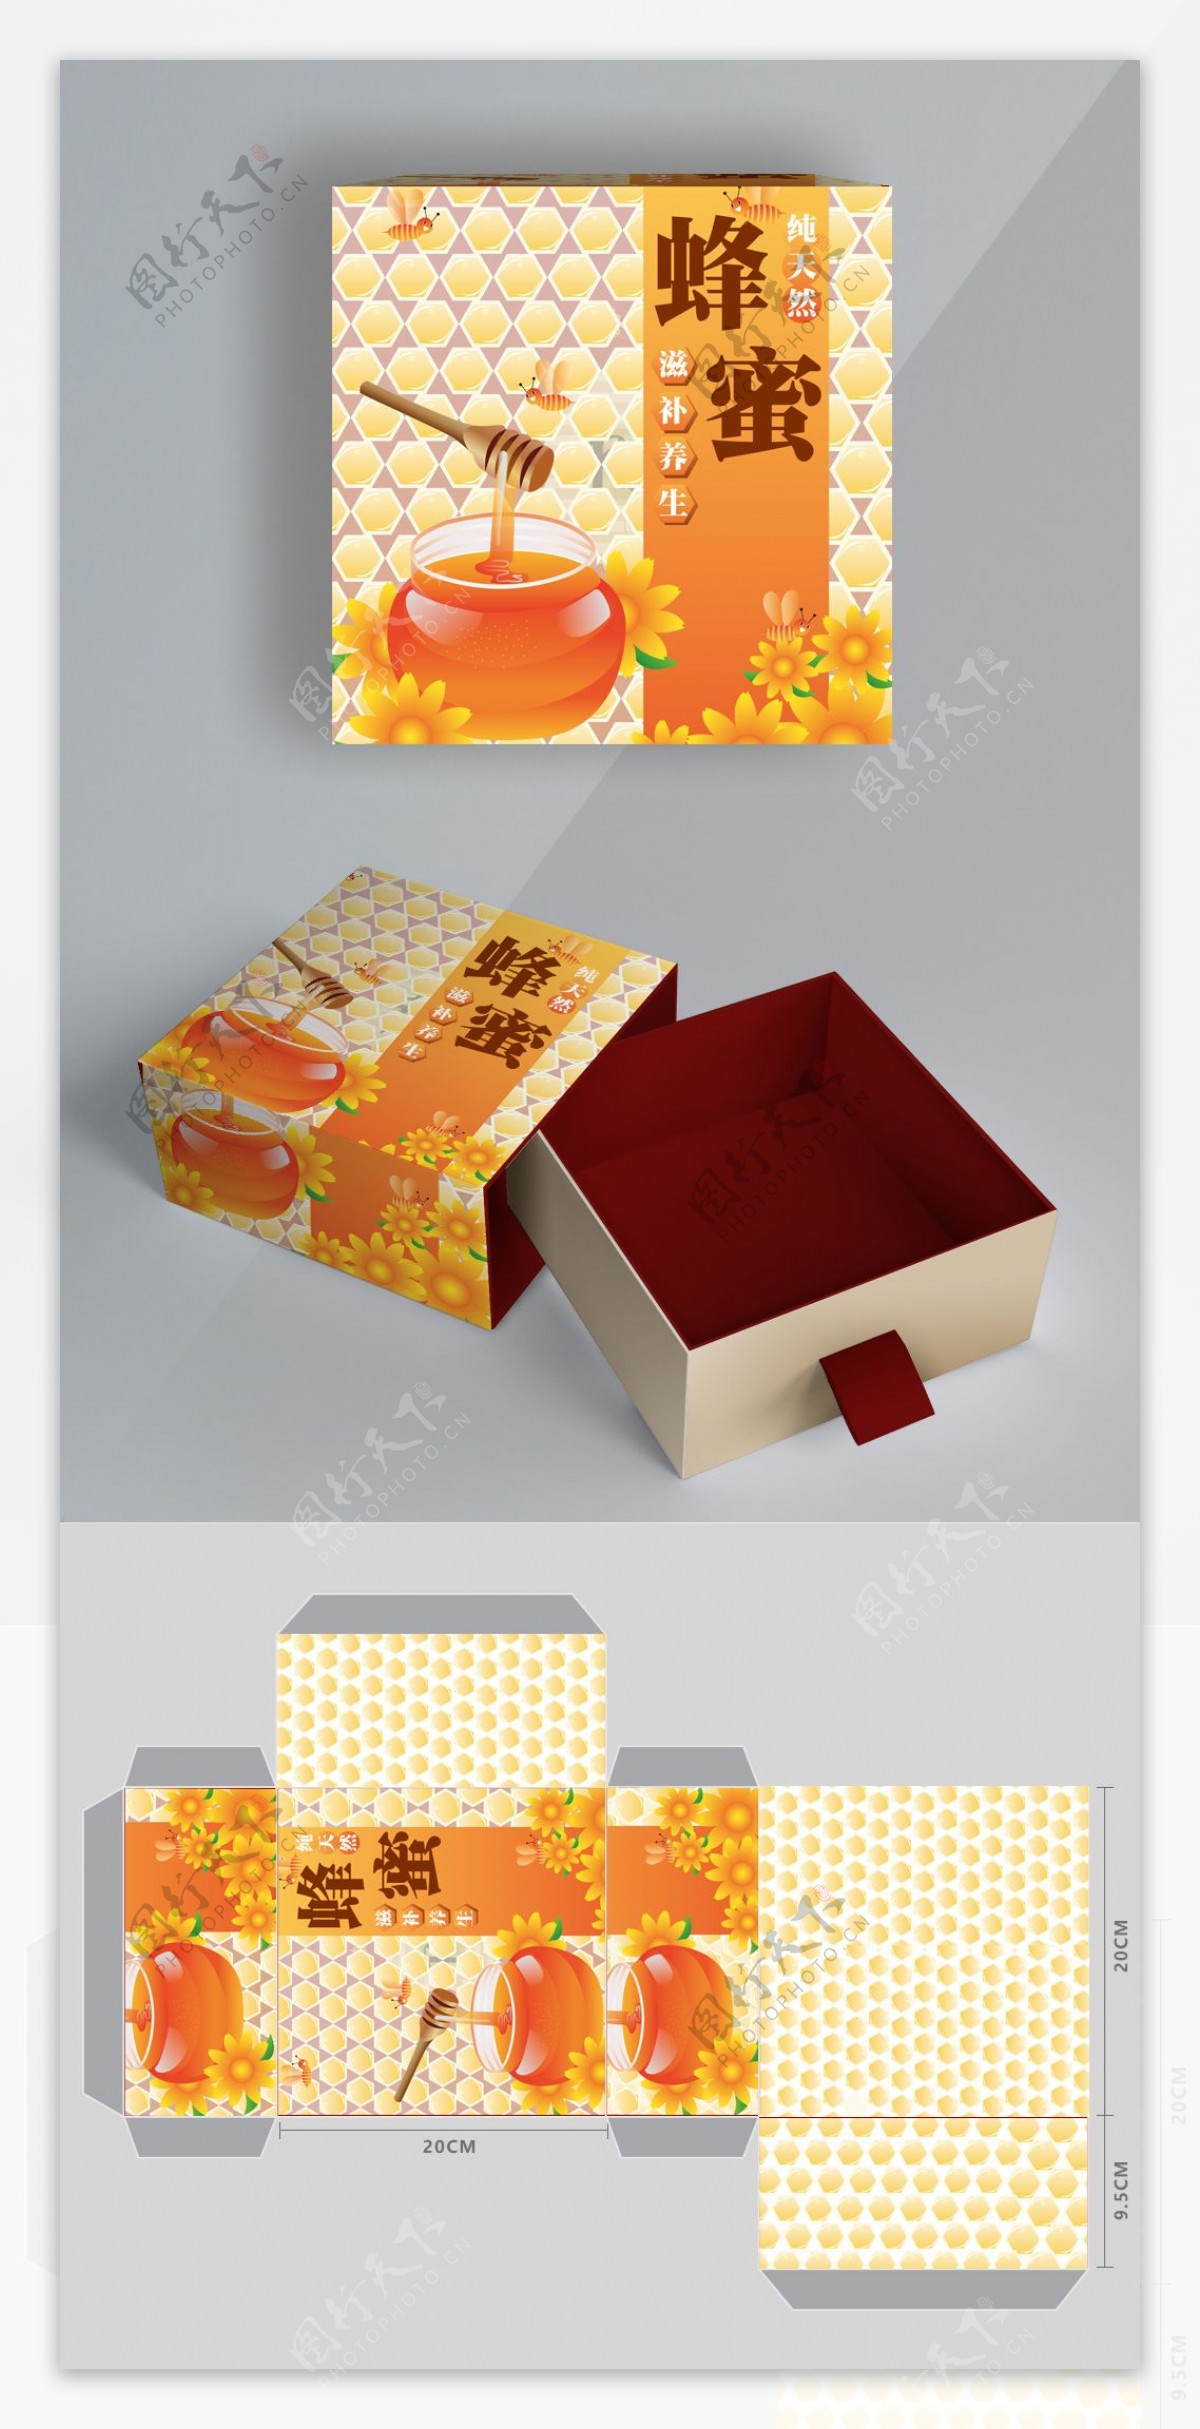 原创手绘插画蜂蜜包装盒